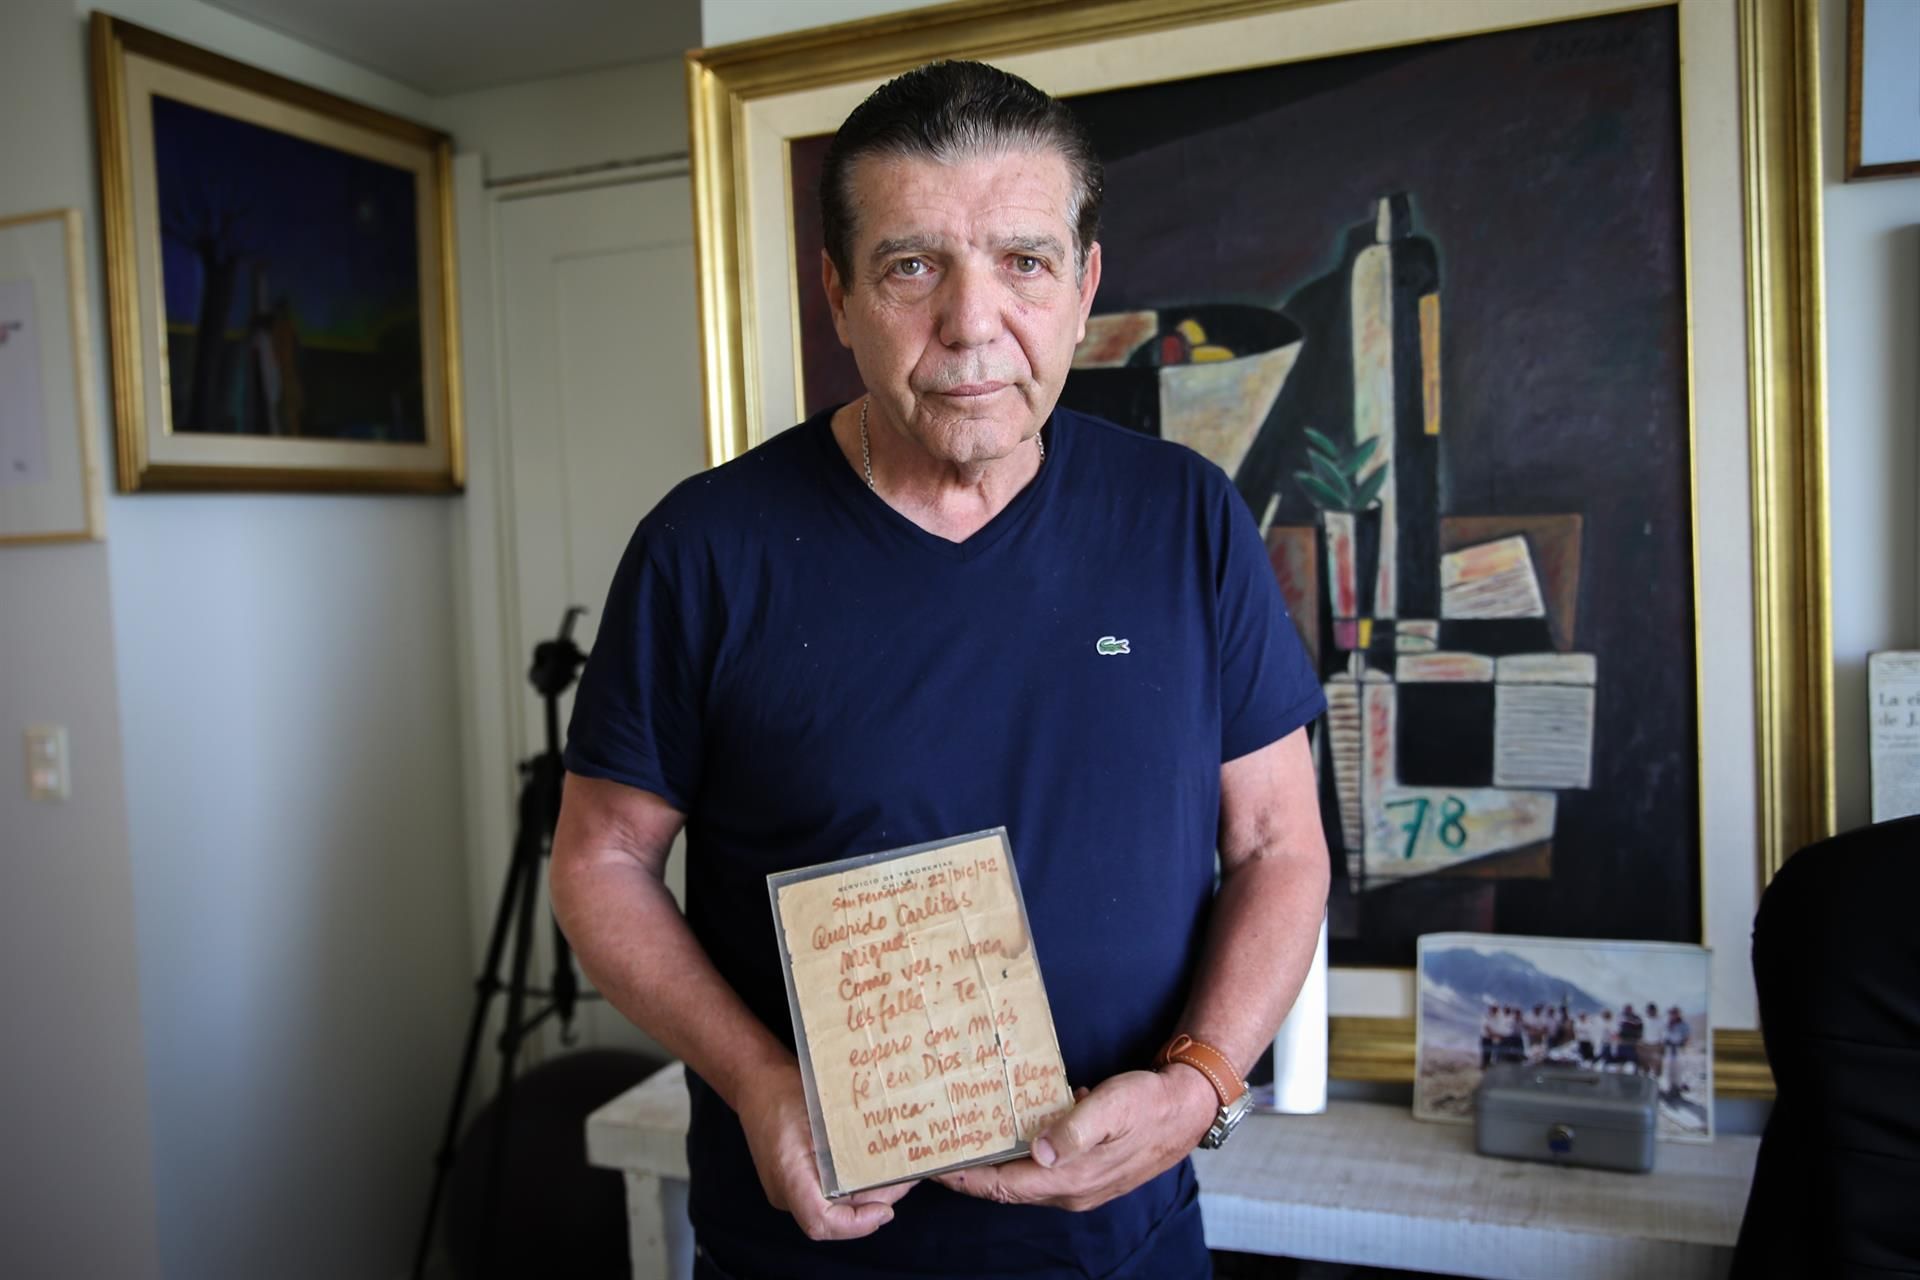 Carlos Páez, sobreviviente de la tragedia de los Andes, posa con una carta enviada por su padre, el 28 de septiembre de 2022 en Montevideo (Uruguay). EFE/Alejandro Prieto